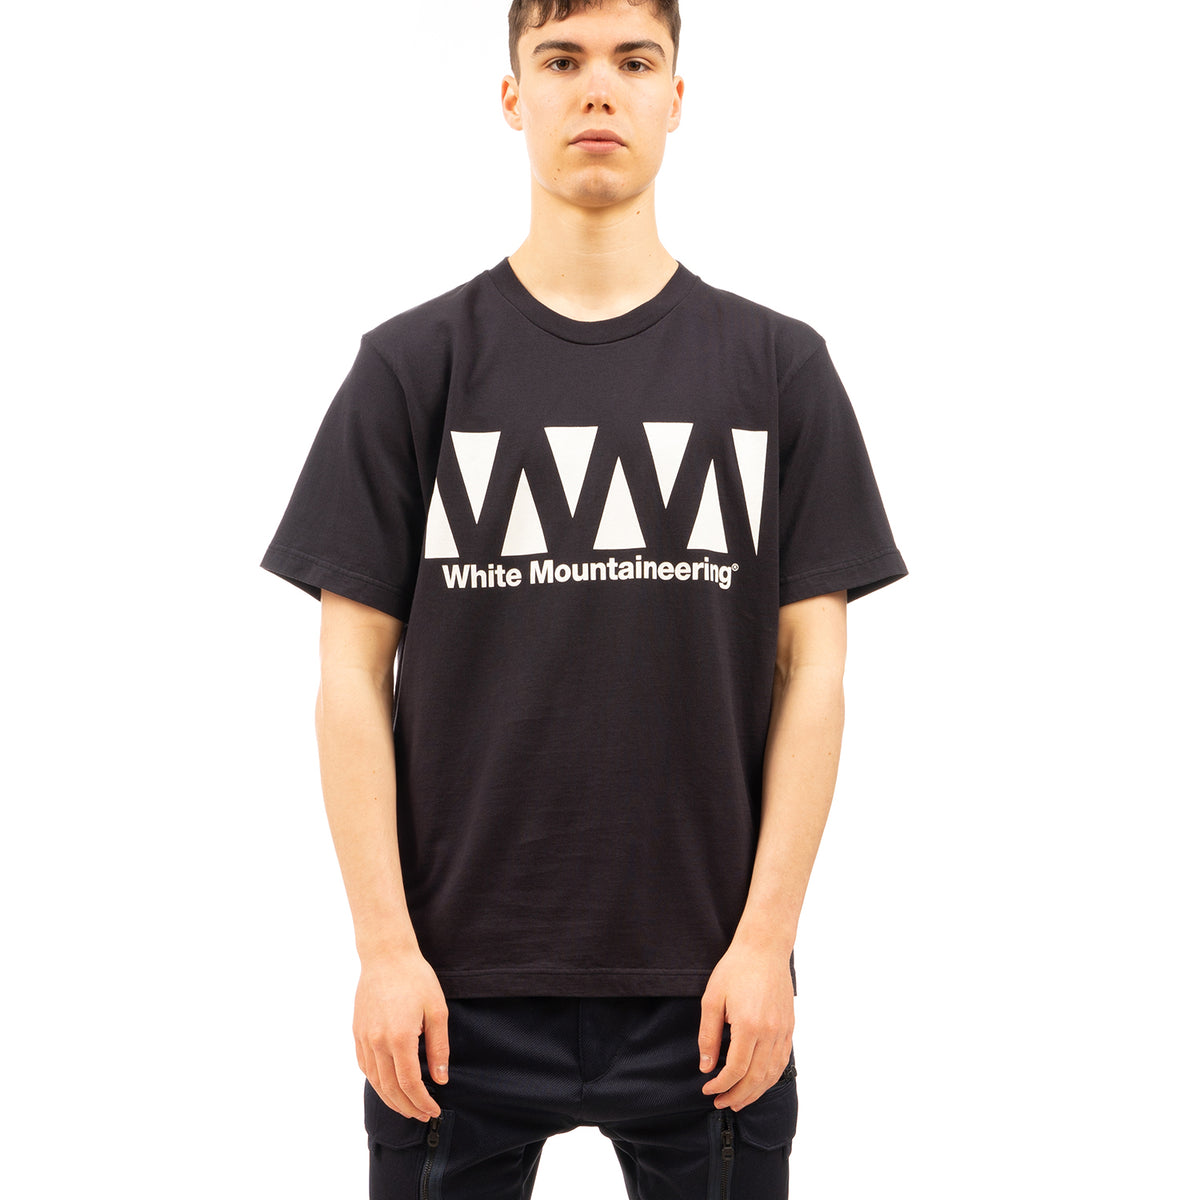 White Mountaineering | WM Logo Printed T-Shirt Navy - Concrete